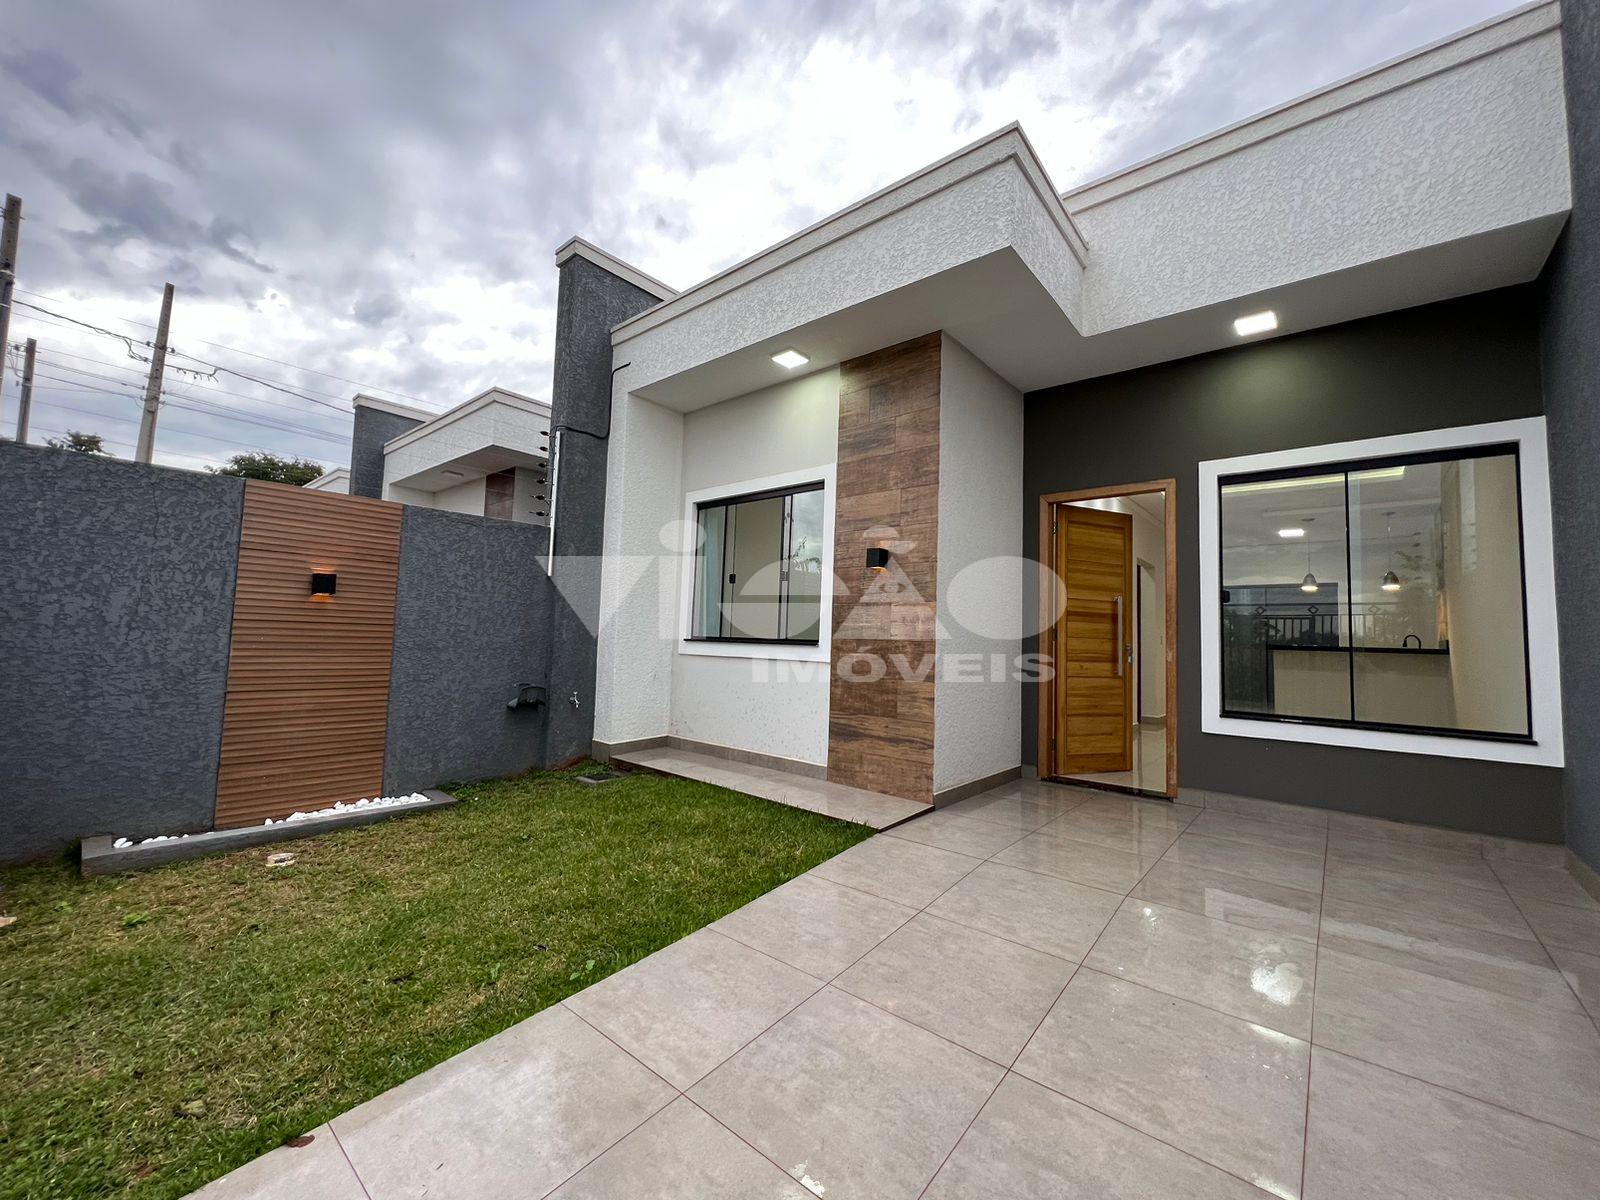 Casa nova no Residencial Vila Floratta, disponível para venda,...